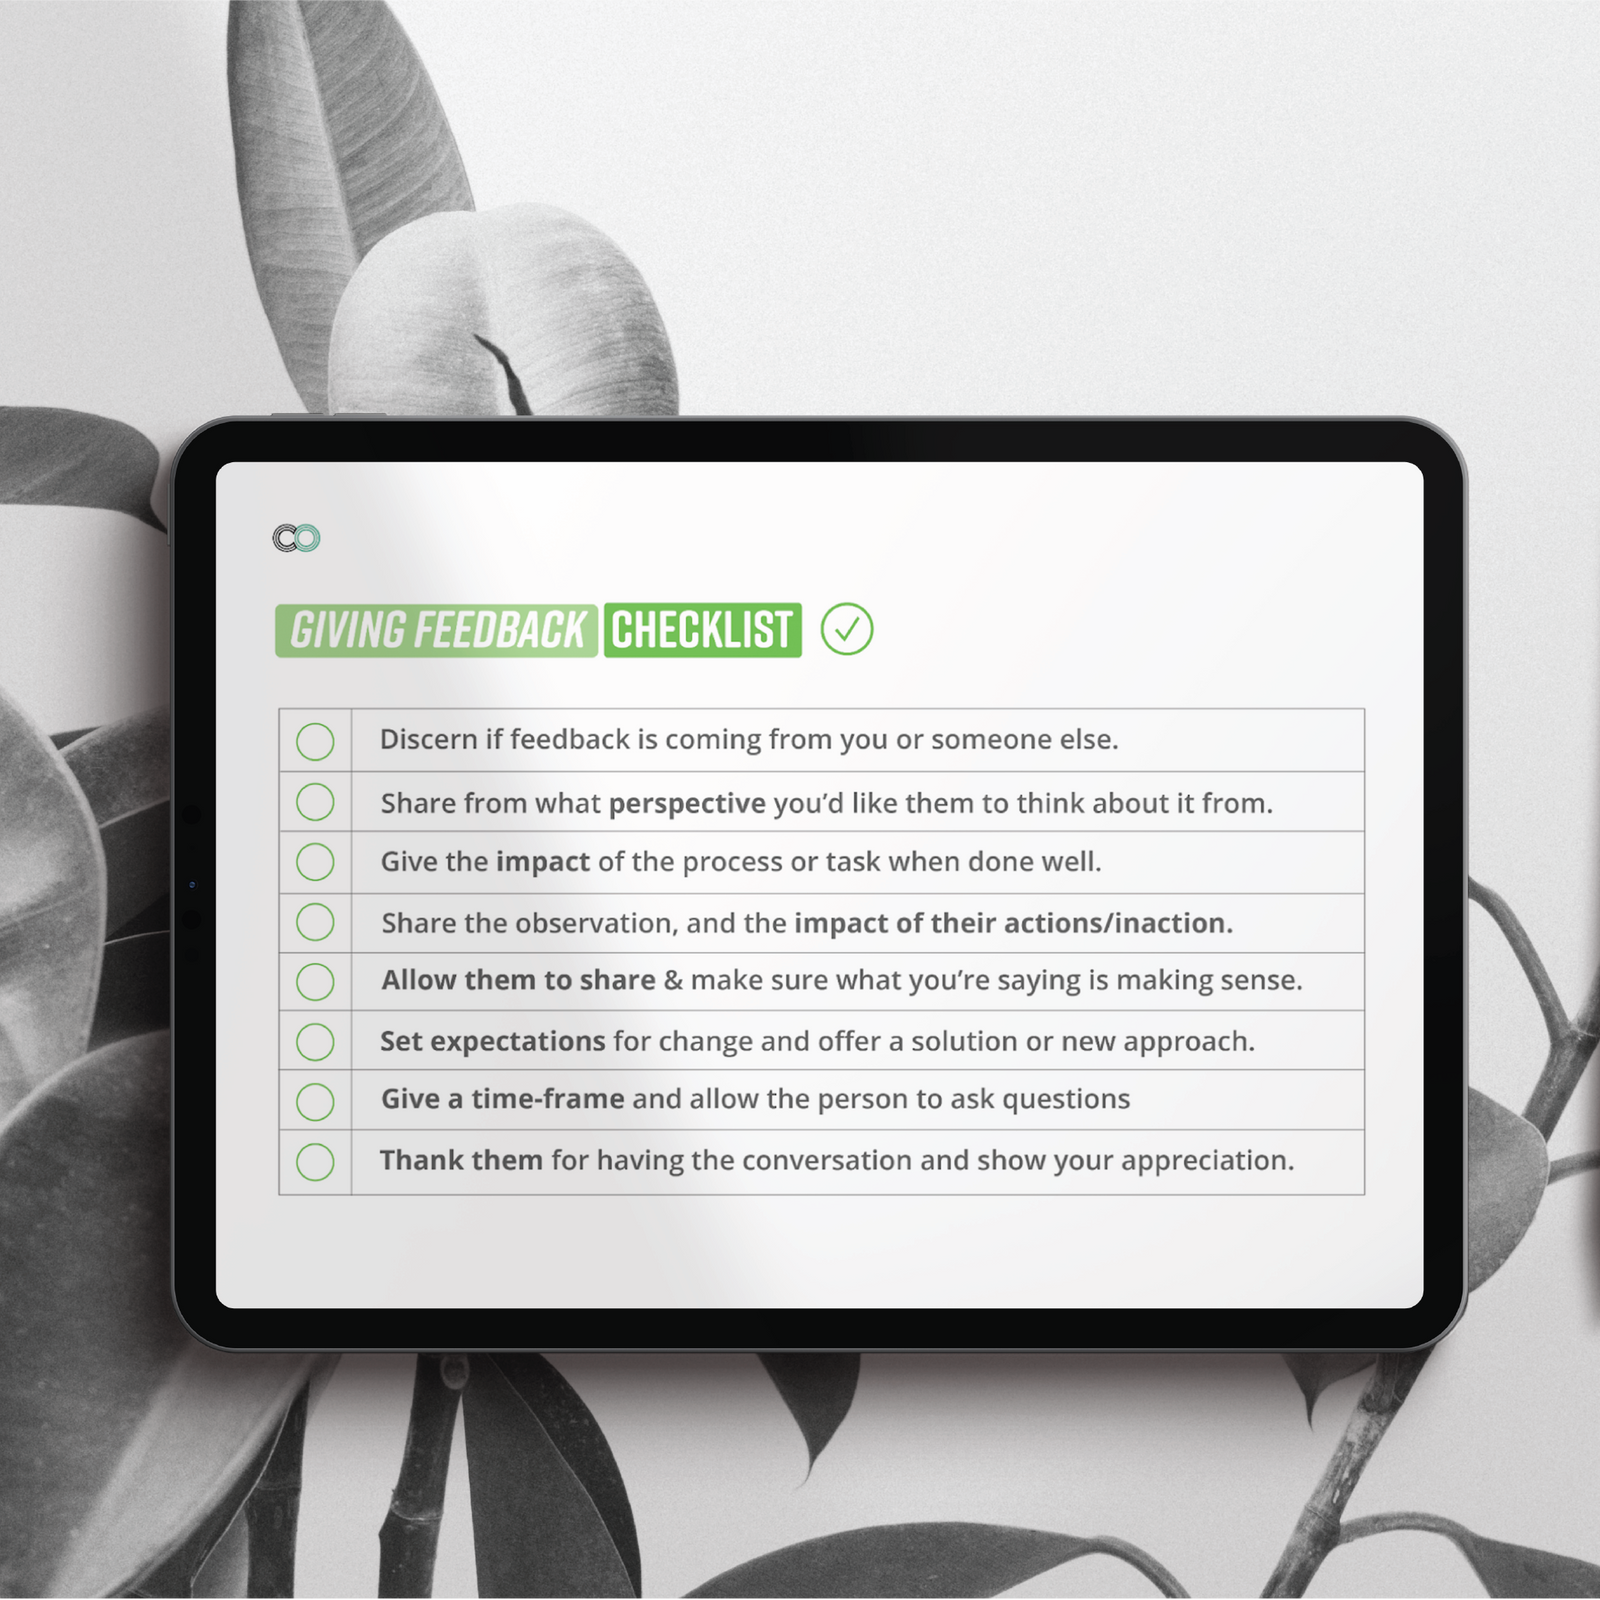 IPad screen with a Career Organic feedback checklist.